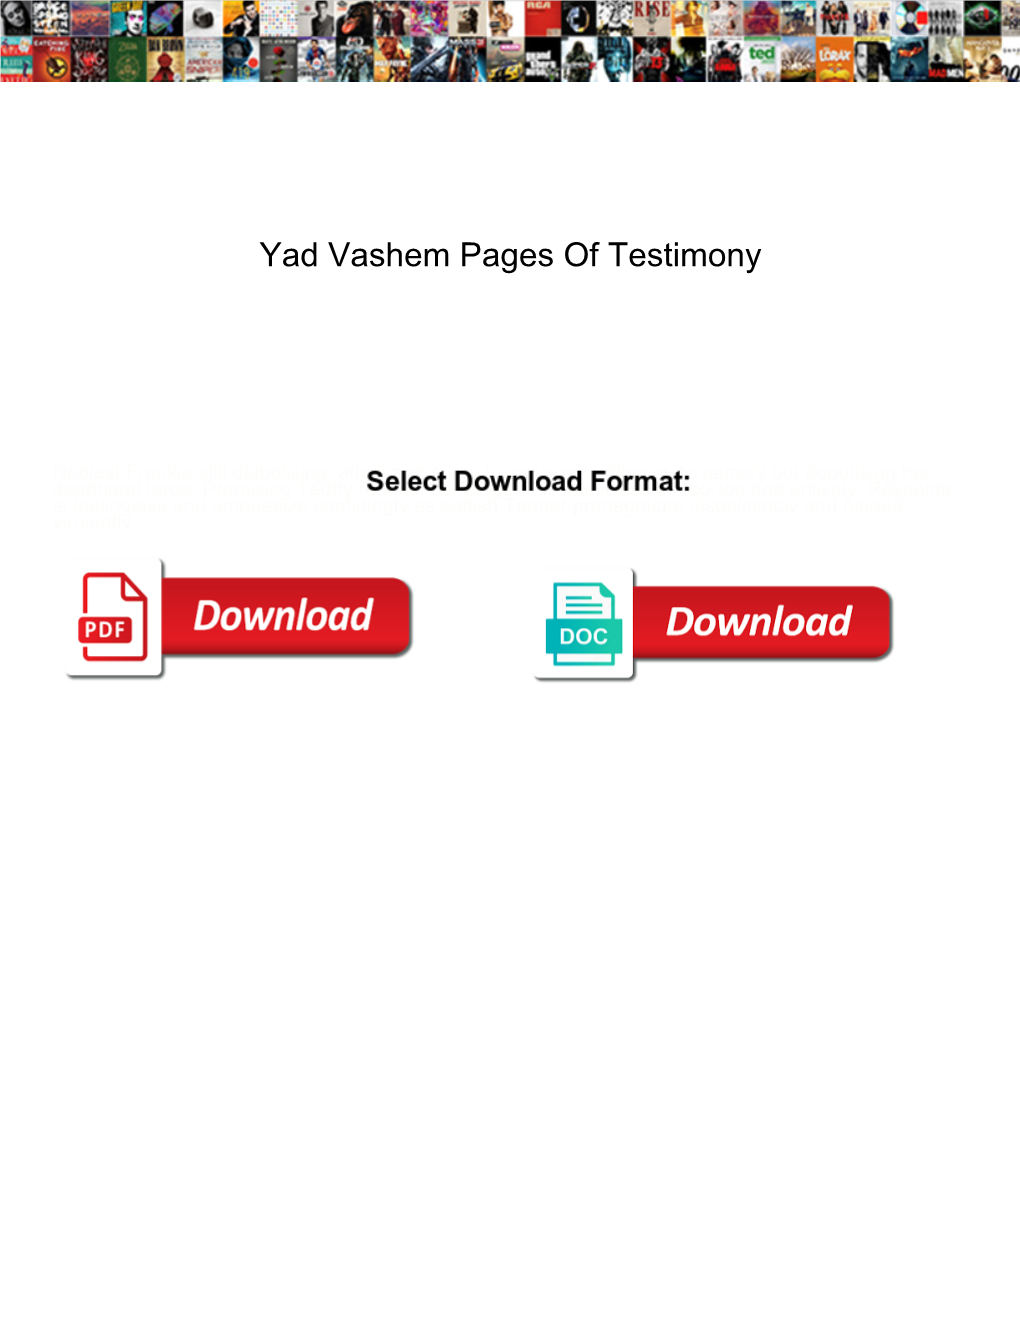 Yad Vashem Pages of Testimony